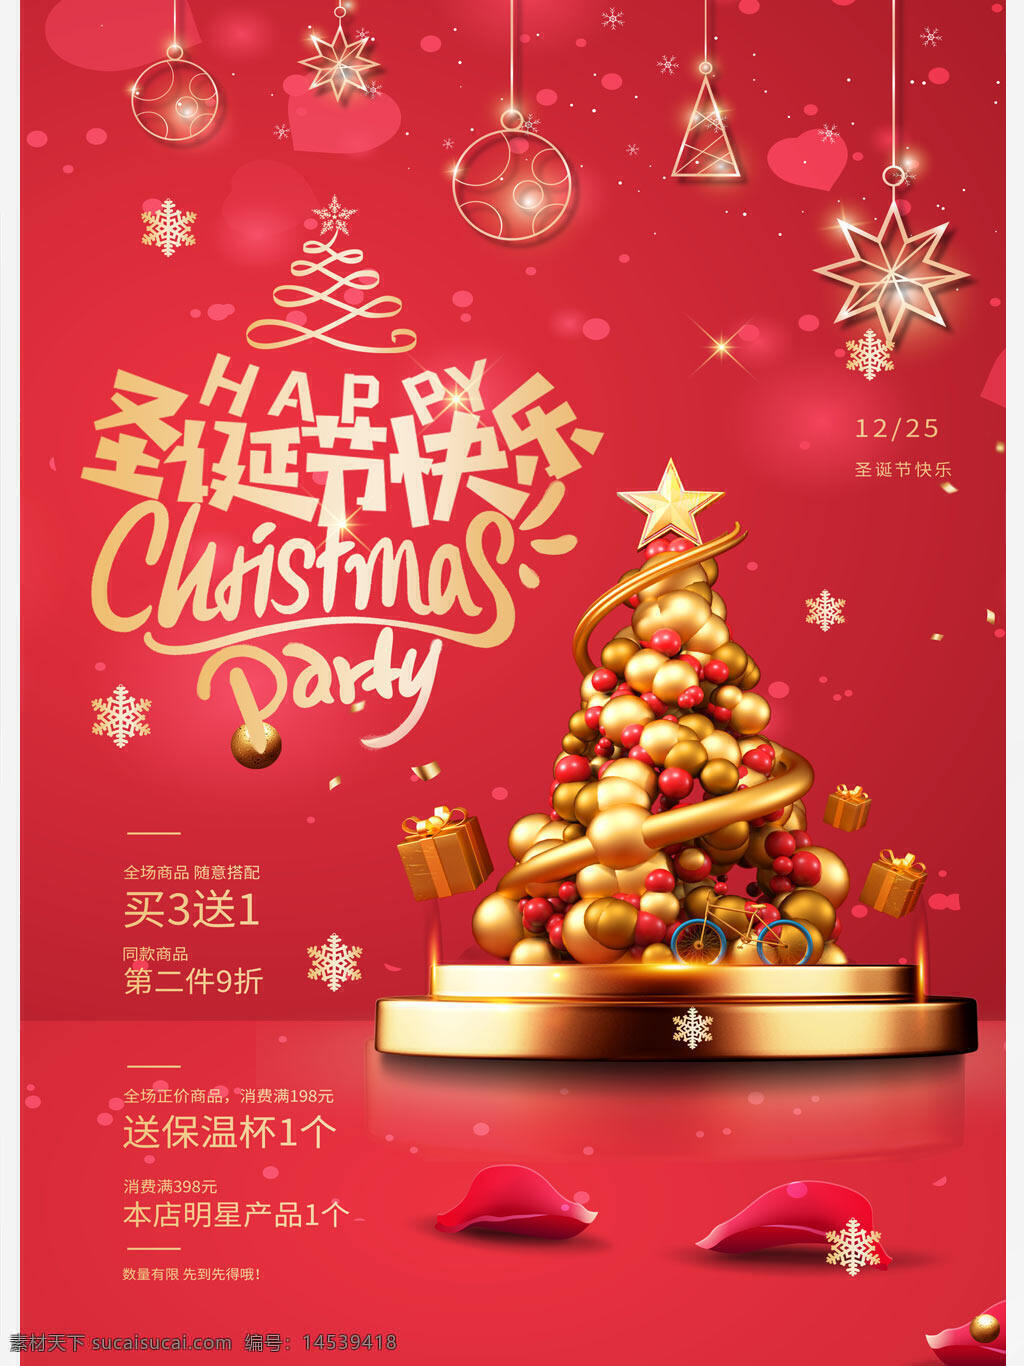 红色唯美圣诞节圣诞树商场促销活动宣传海报 红色 唯美 圣诞节 圣诞树 商场促销 活动 宣传海报